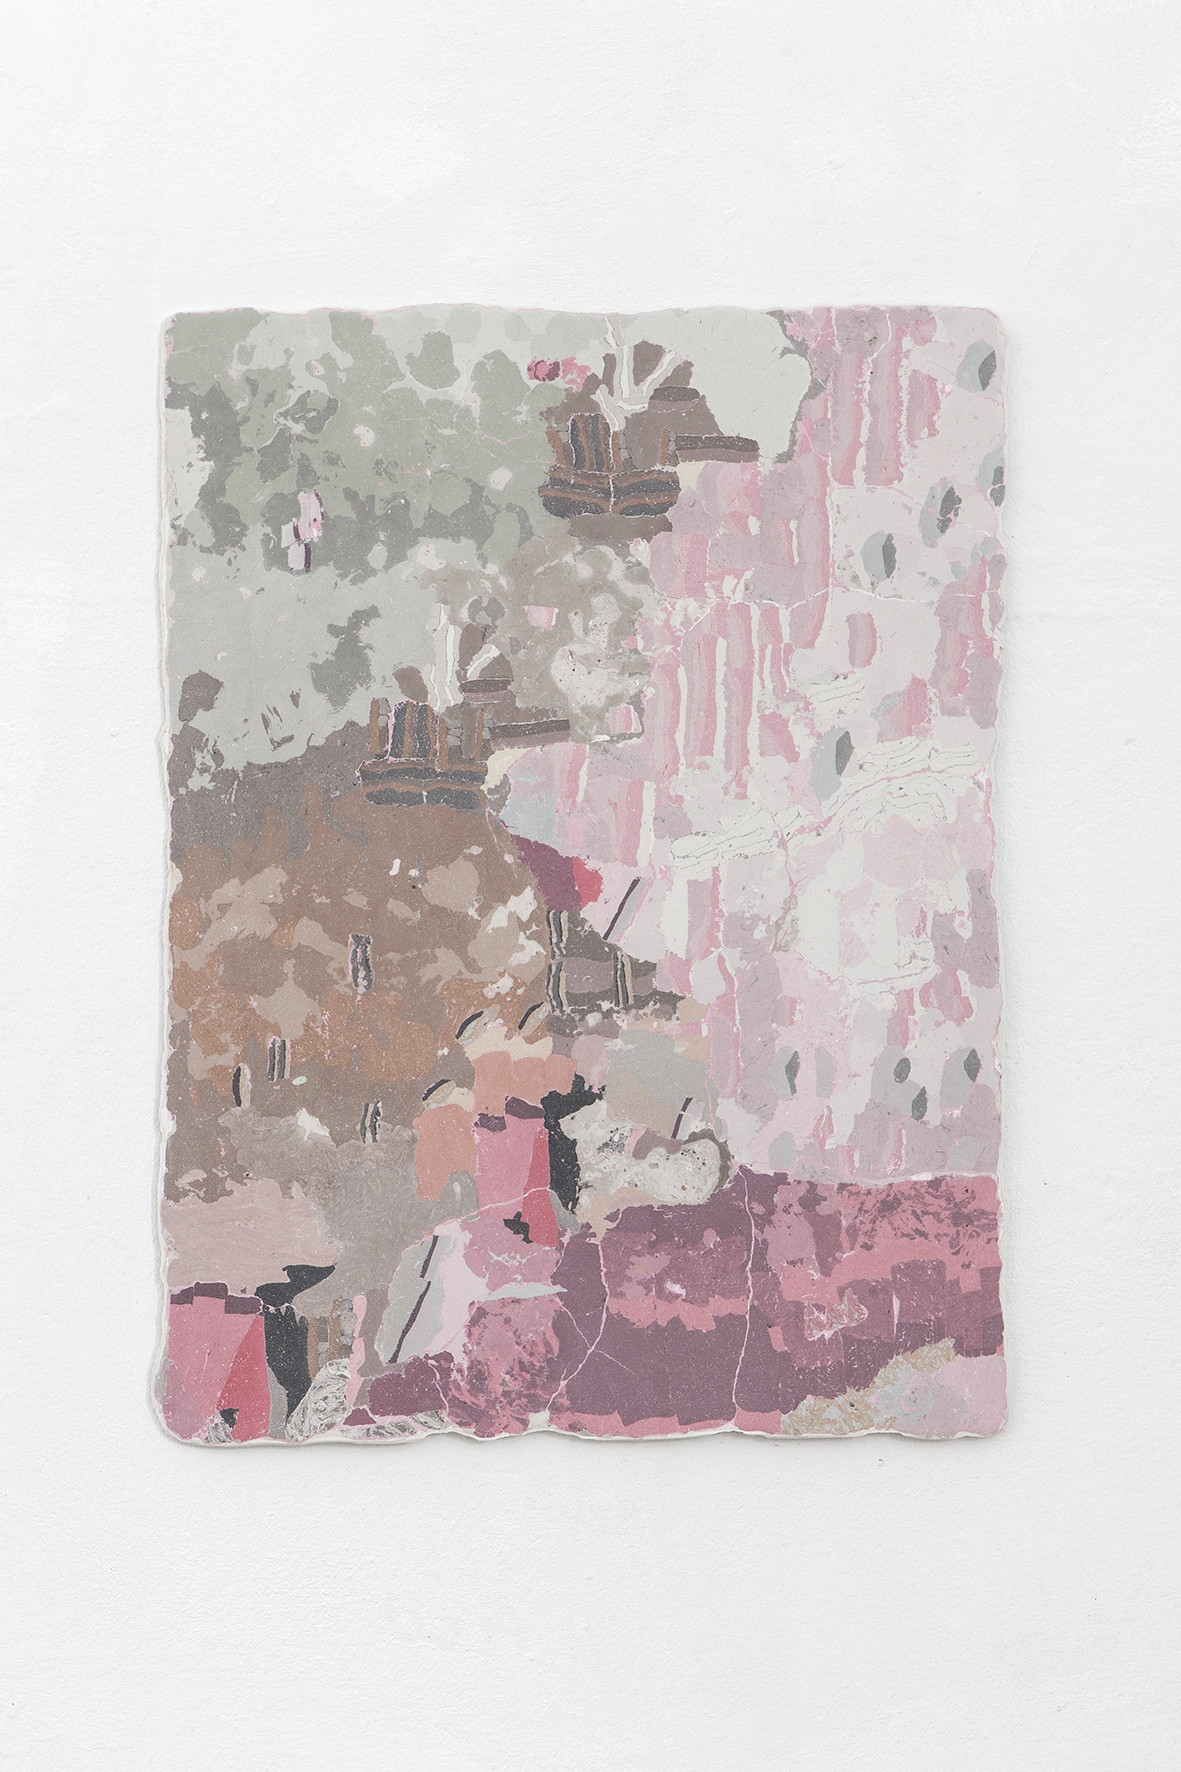 Heti Prack, Dagobert, 2021, 57 x 42 cm, Gypsum, pigments, bone glue